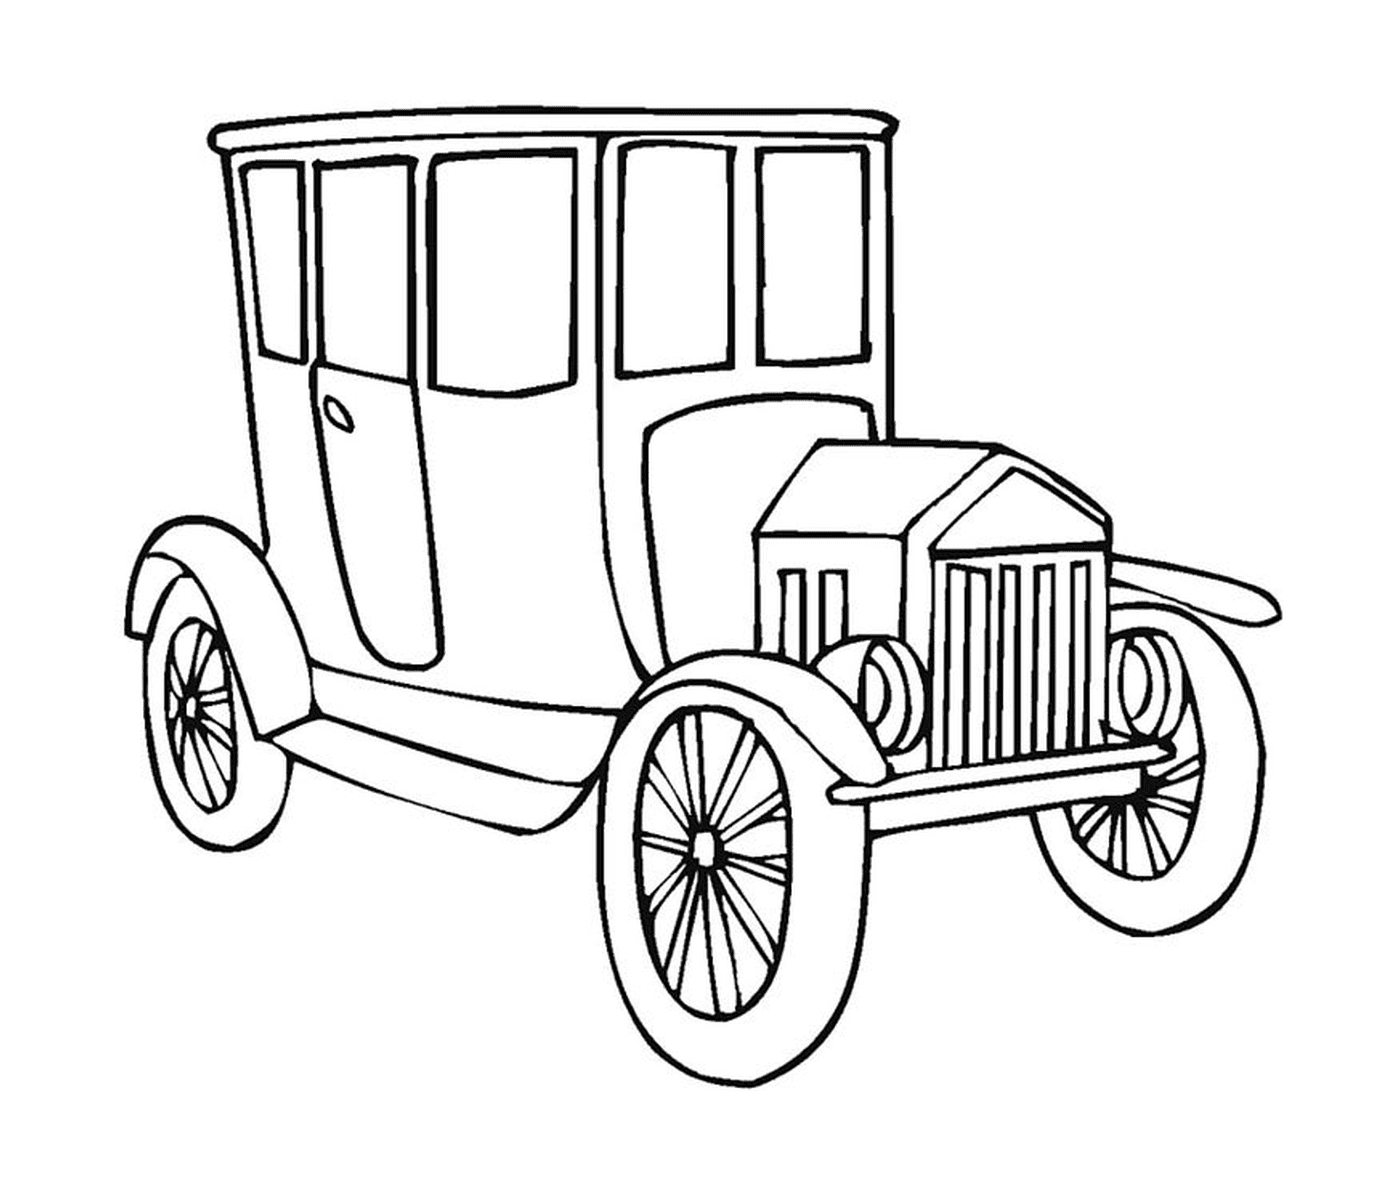  Carro velho desenhado 